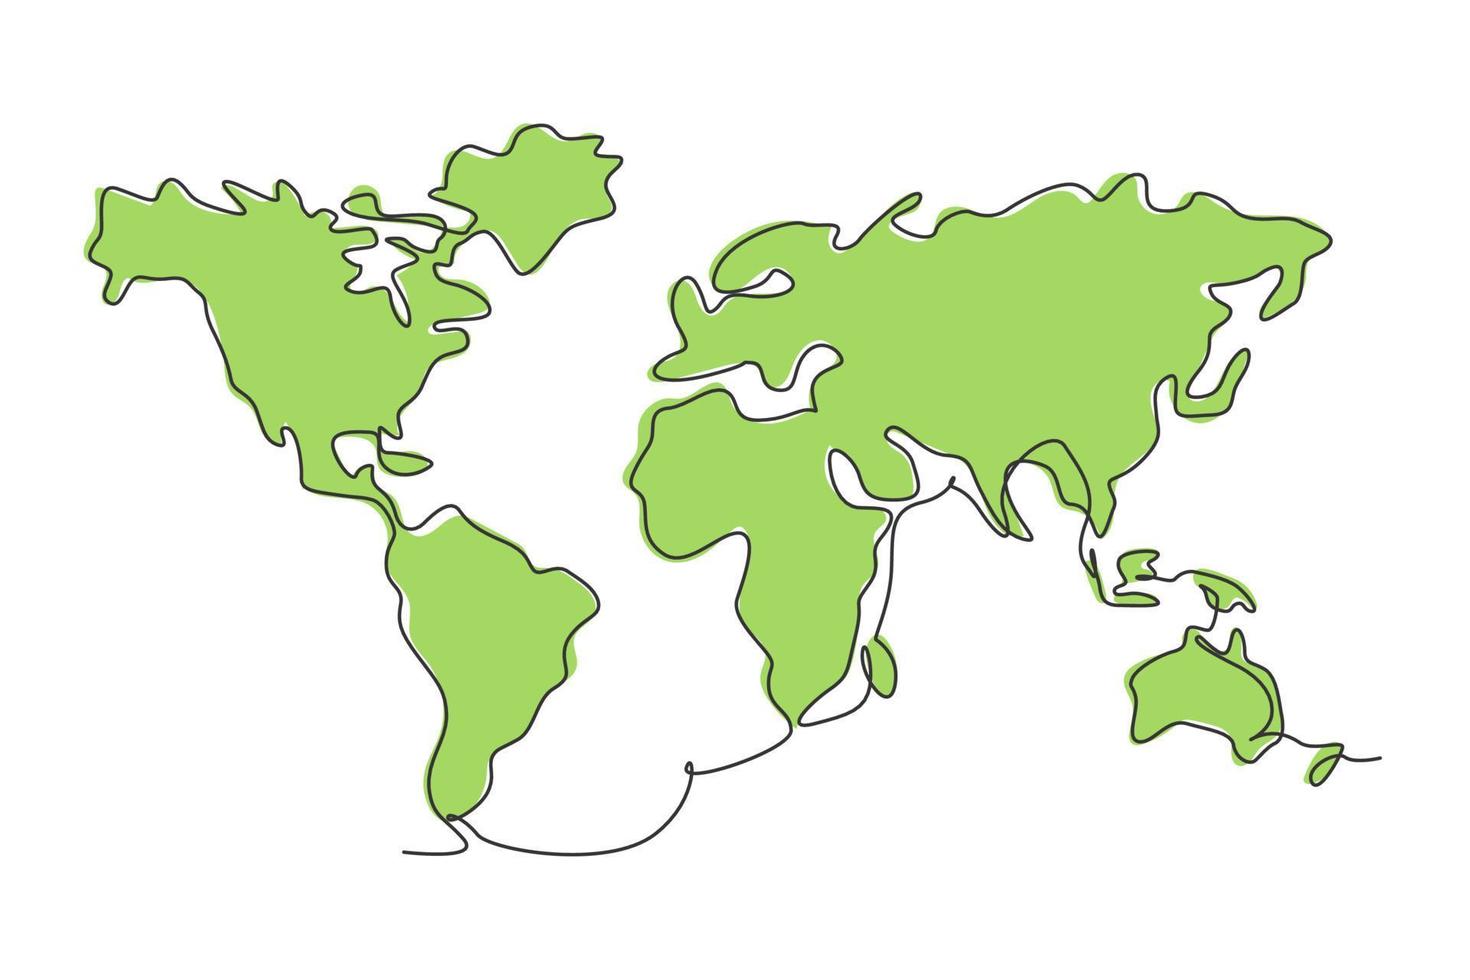 världskarta. kontinuerlig enradsteckning av minimalistisk design av världsatlas på en vit bakgrund. isolerad enkel rad modern grafisk stil. handritat grafiskt koncept för utbildning vektor